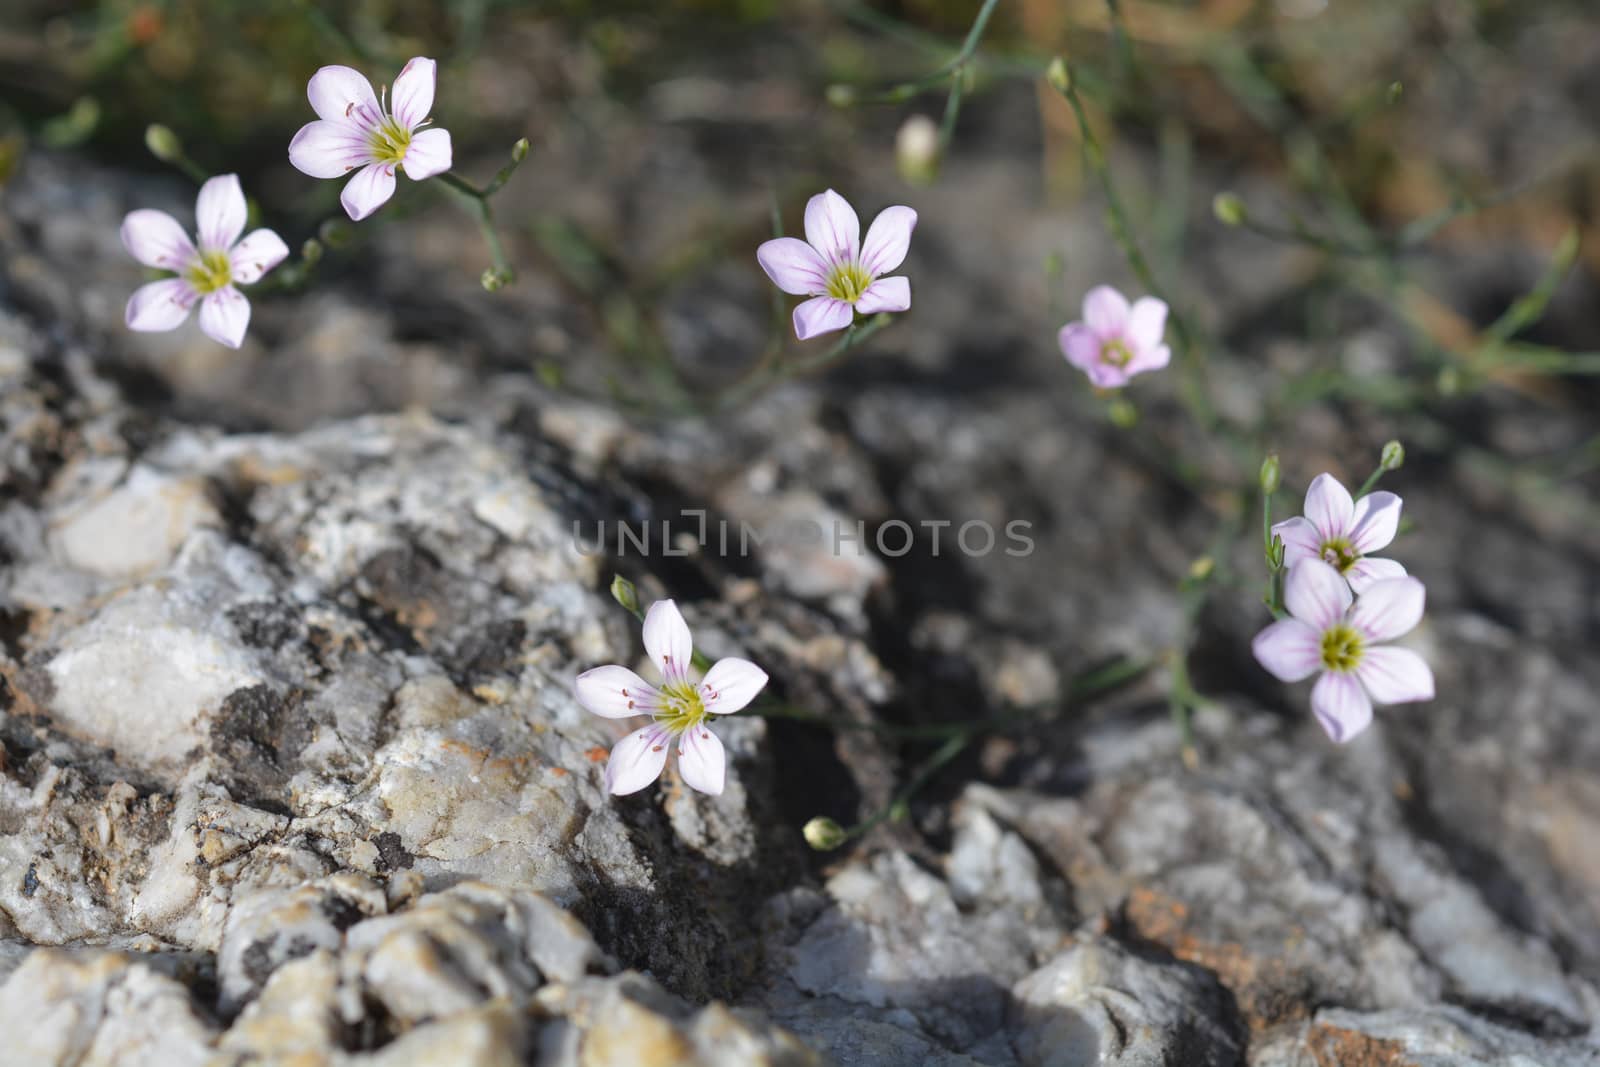 Saxifrage pink - Latin name - Petrorhagia saxifraga